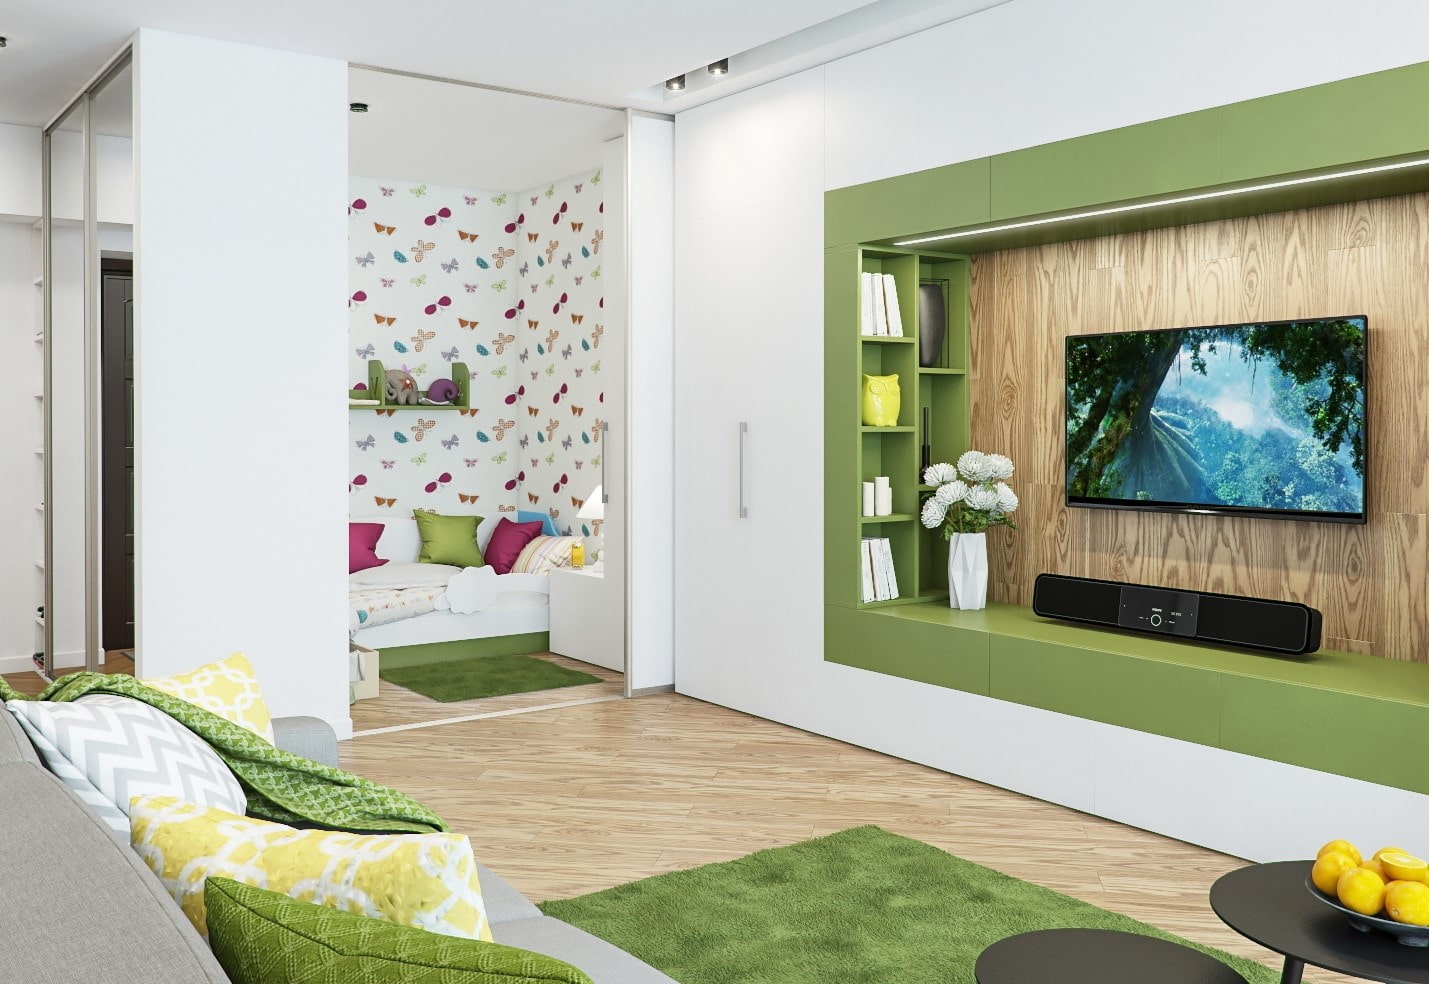 Зонирование и дизайн интерьера гостиной-спальни в одной комнате